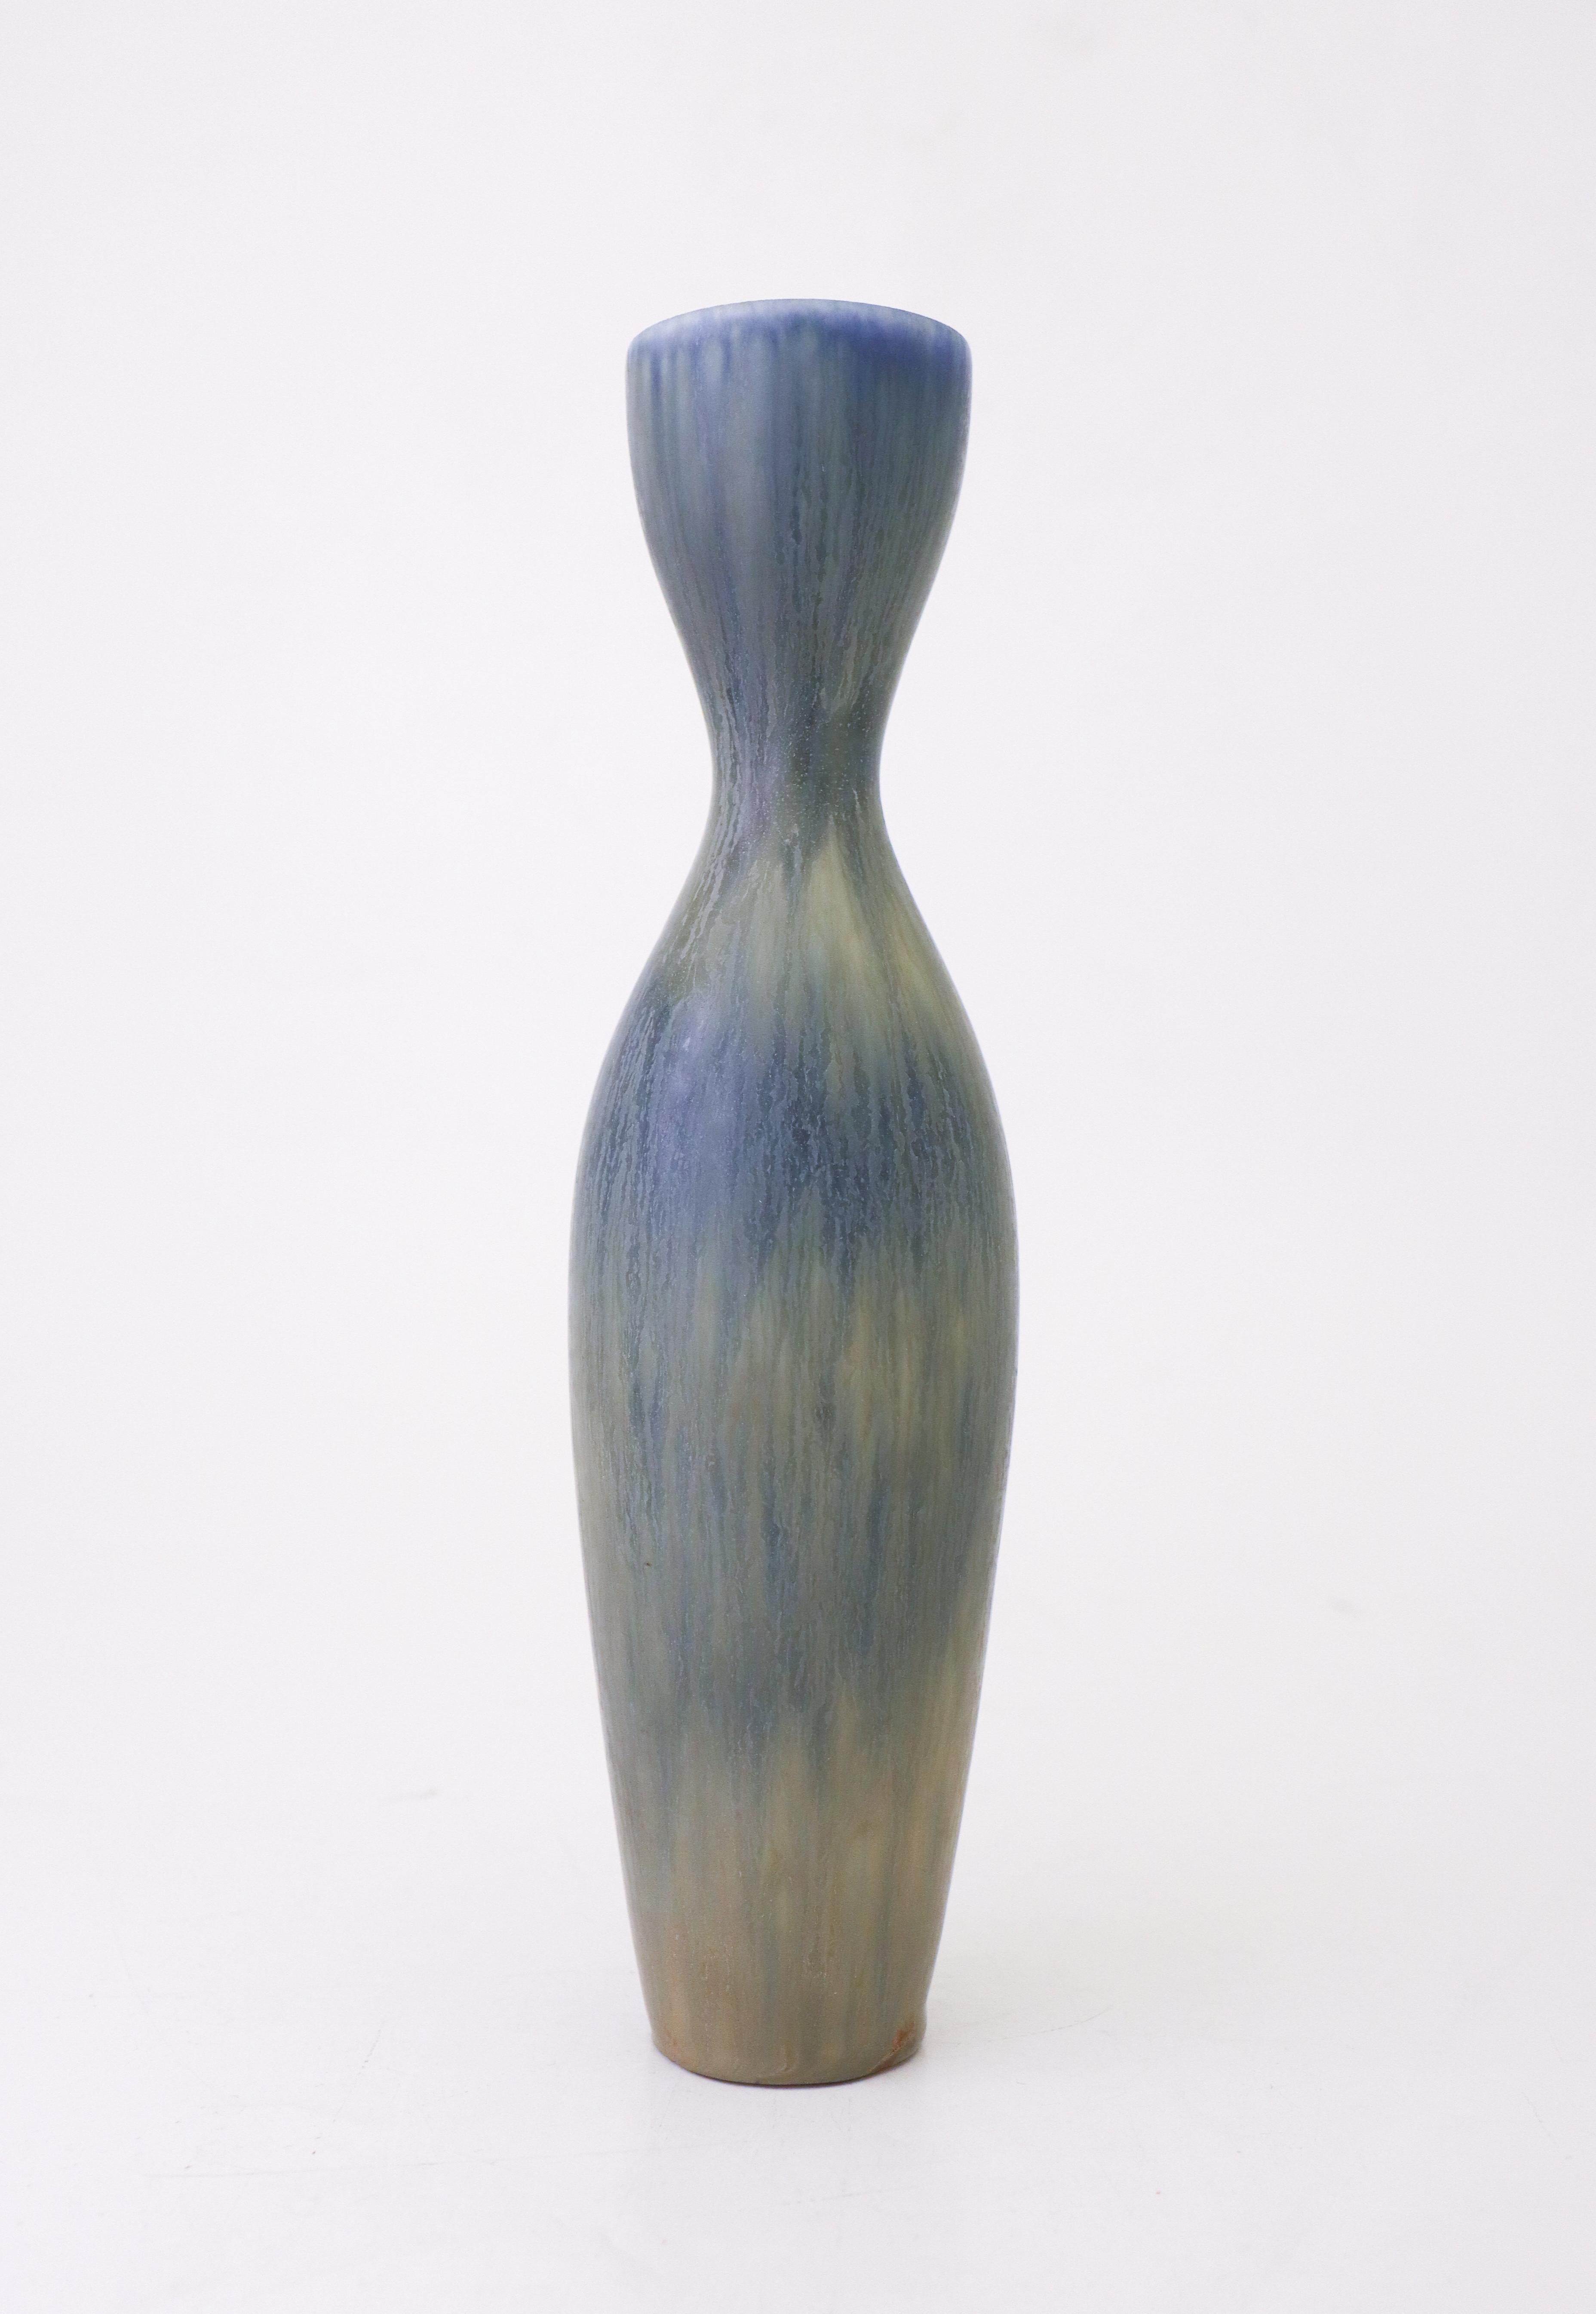 Un vase en céramique avec une étonnante glaçure bleue, conçu par Carl-Harry Stålhane chez Rörstrand. Le vase mesure 28 cm de haut et est en parfait état. Il est marqué comme étant de 1ère qualité.

Carl-Harry Stålhane est l'un des grands noms de